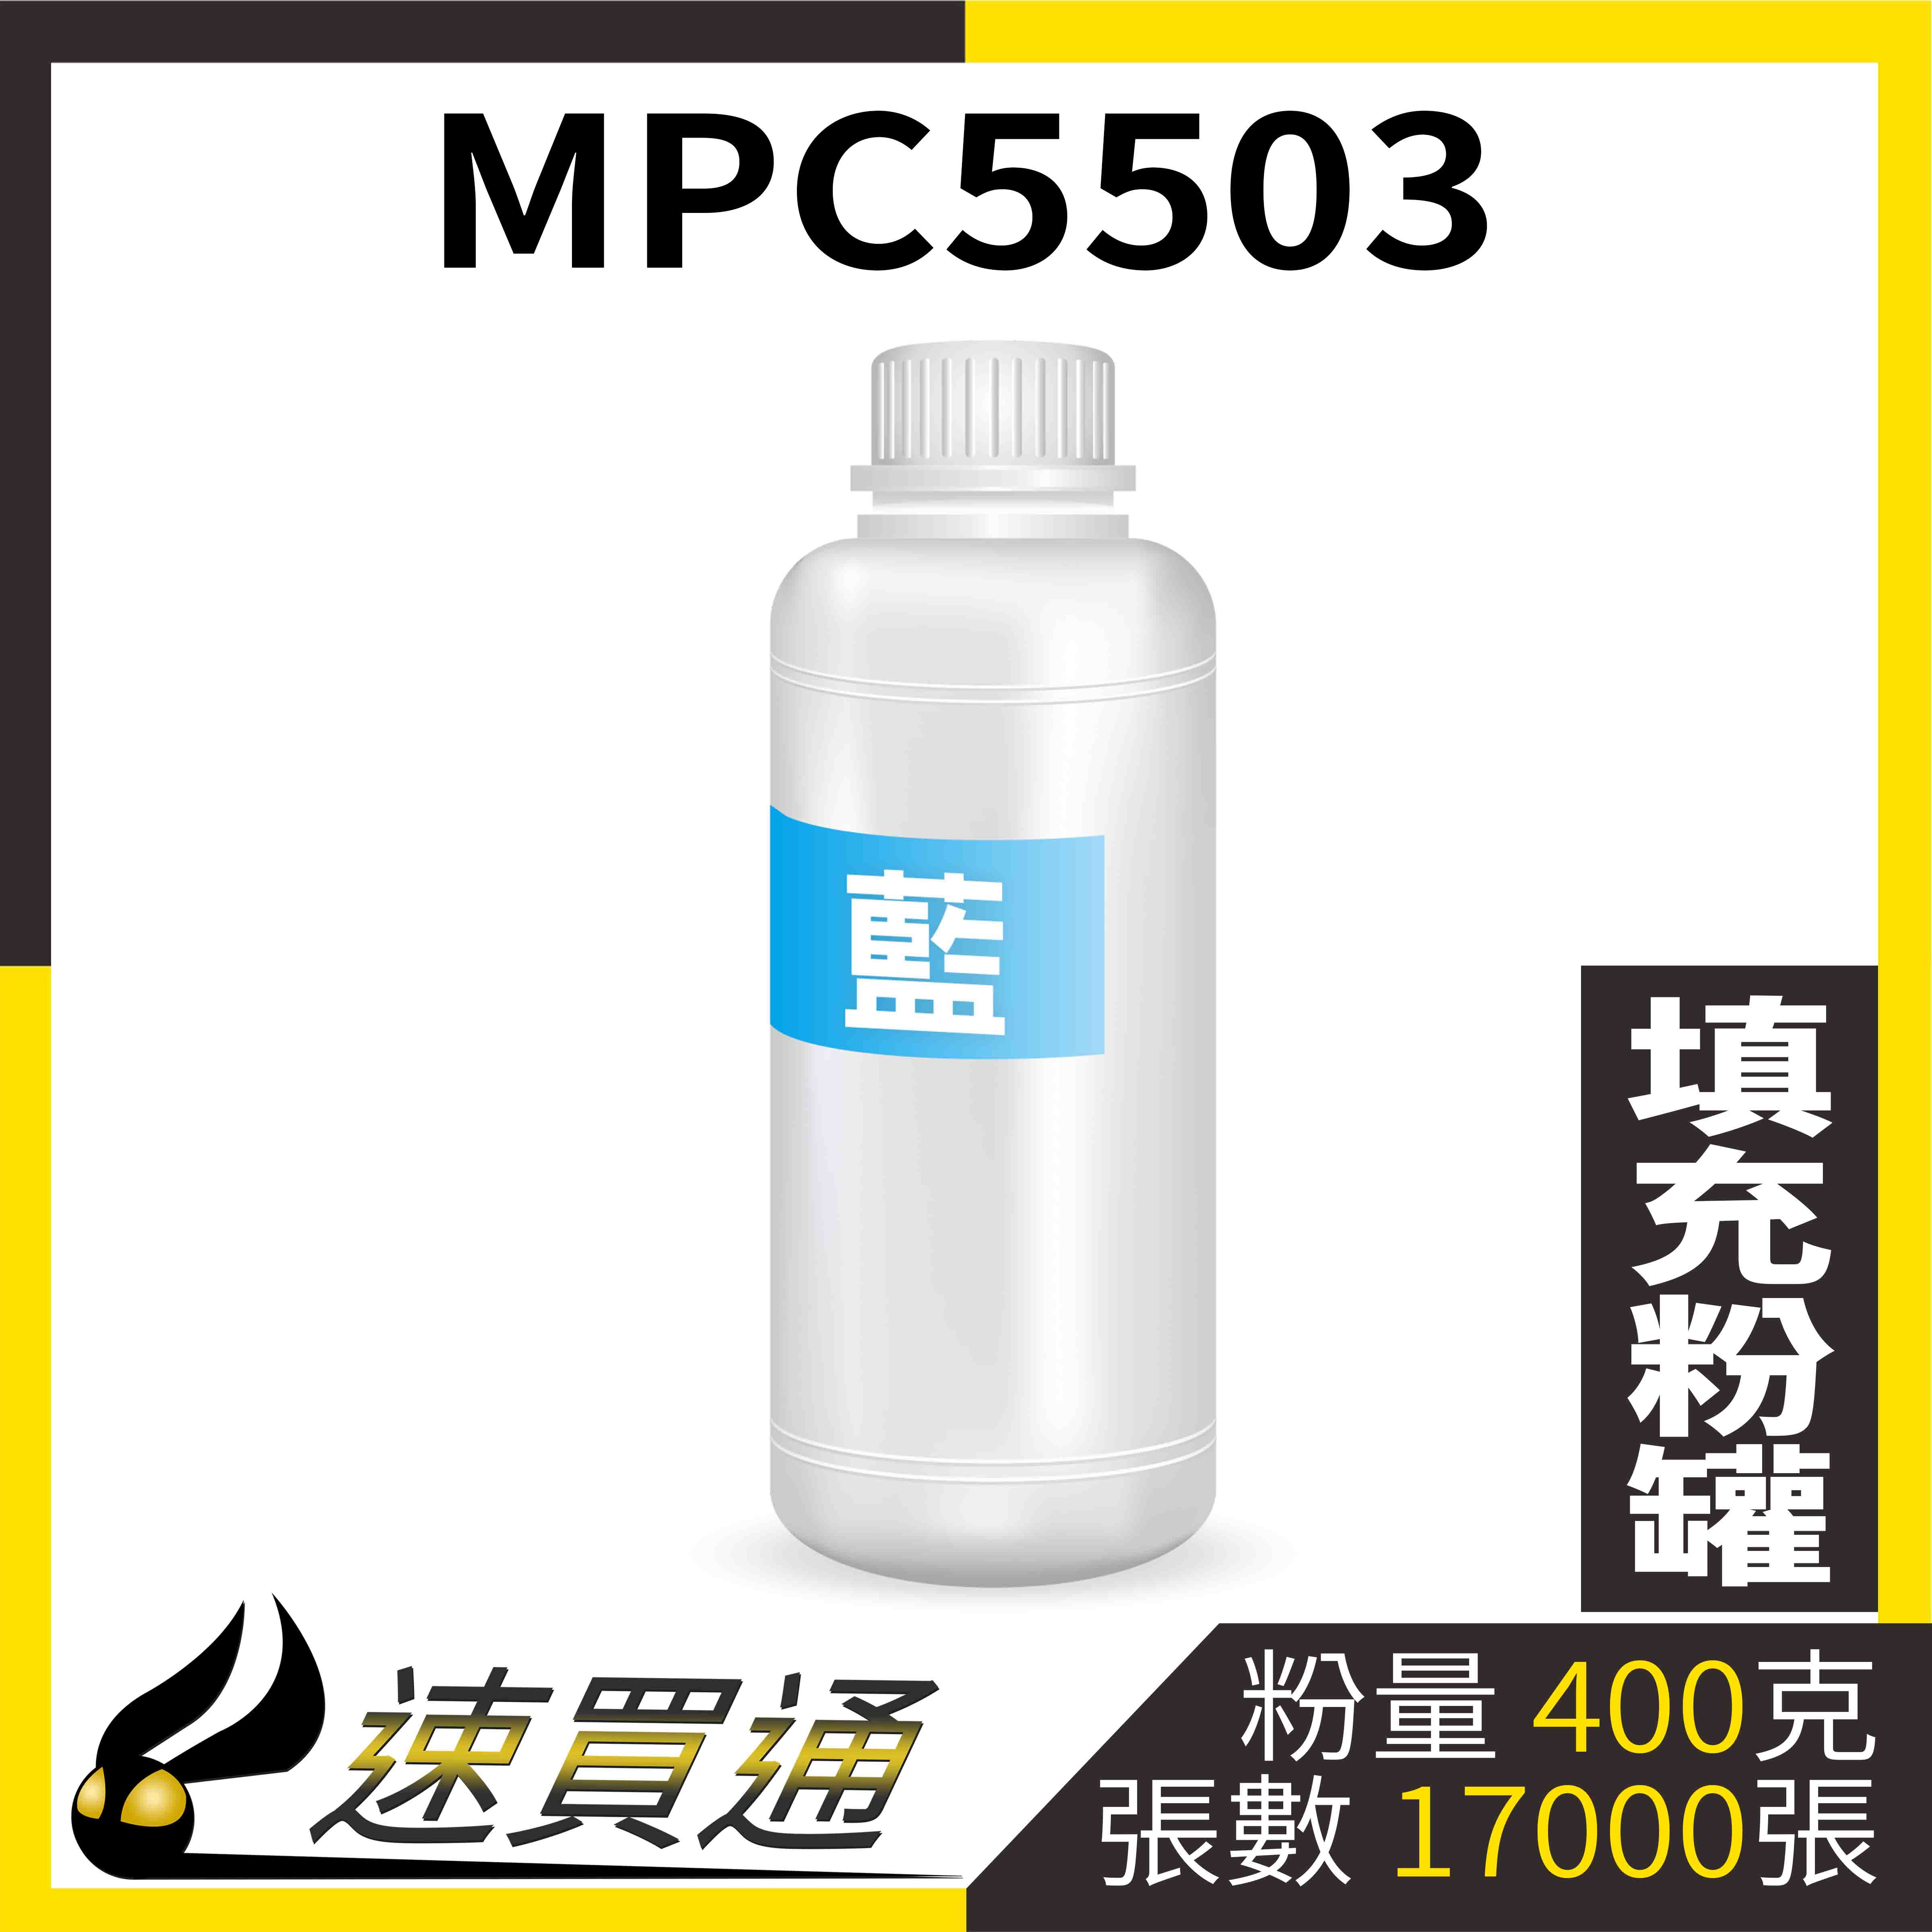 【速買通】RICOH MPC5503 藍 填充式碳粉罐